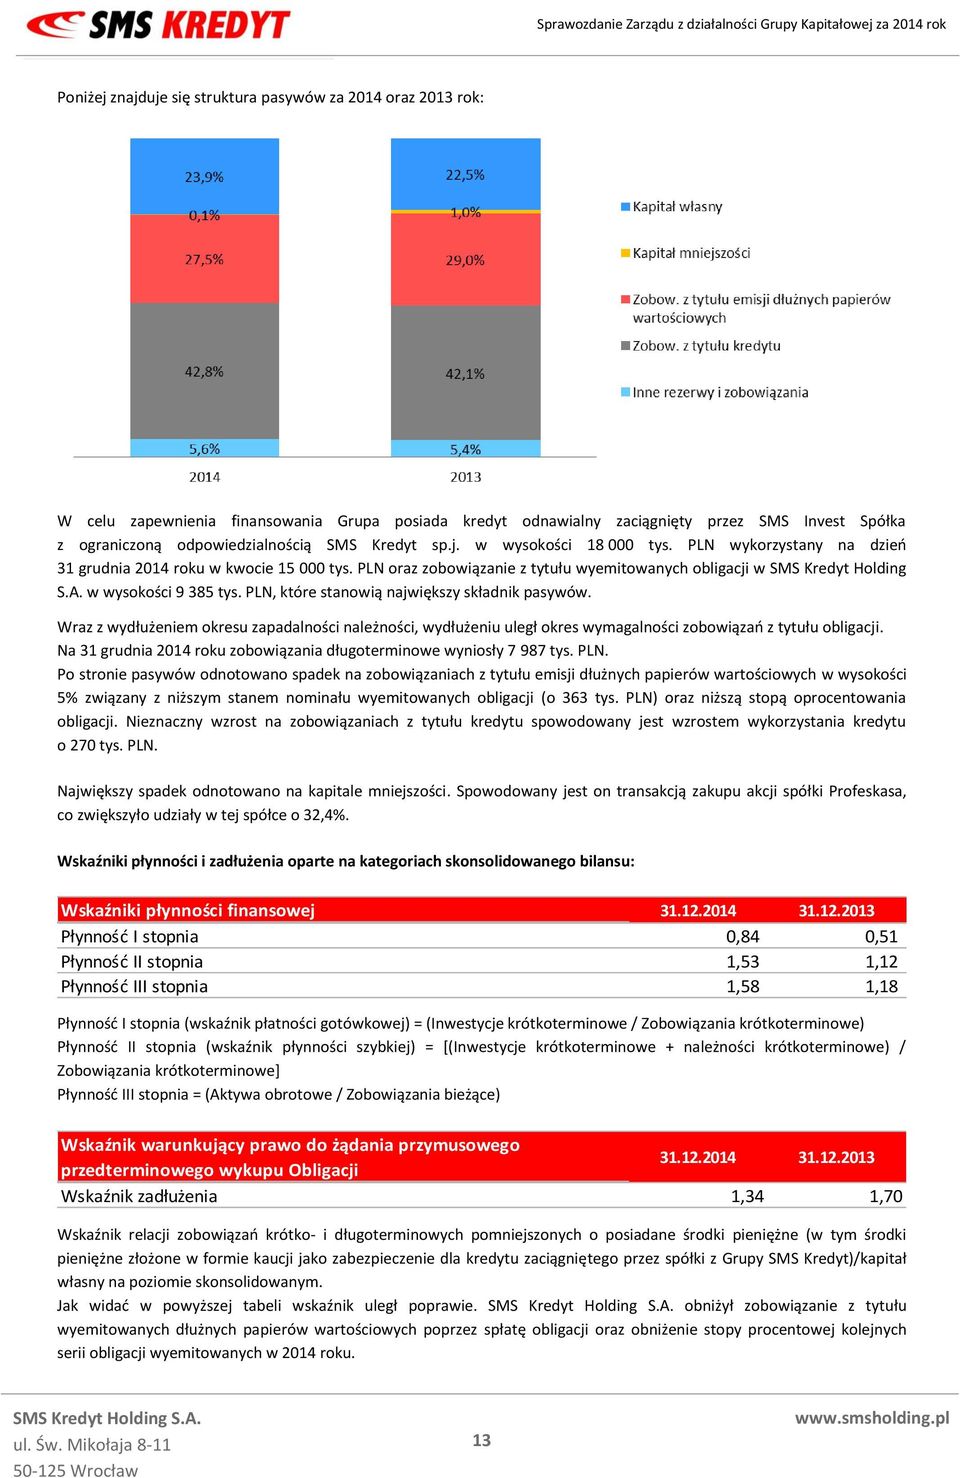 w wysokości 9 385 tys. PLN, które stanowią największy składnik pasywów. Wraz z wydłużeniem okresu zapadalności należności, wydłużeniu uległ okres wymagalności zobowiązań z tytułu obligacji.